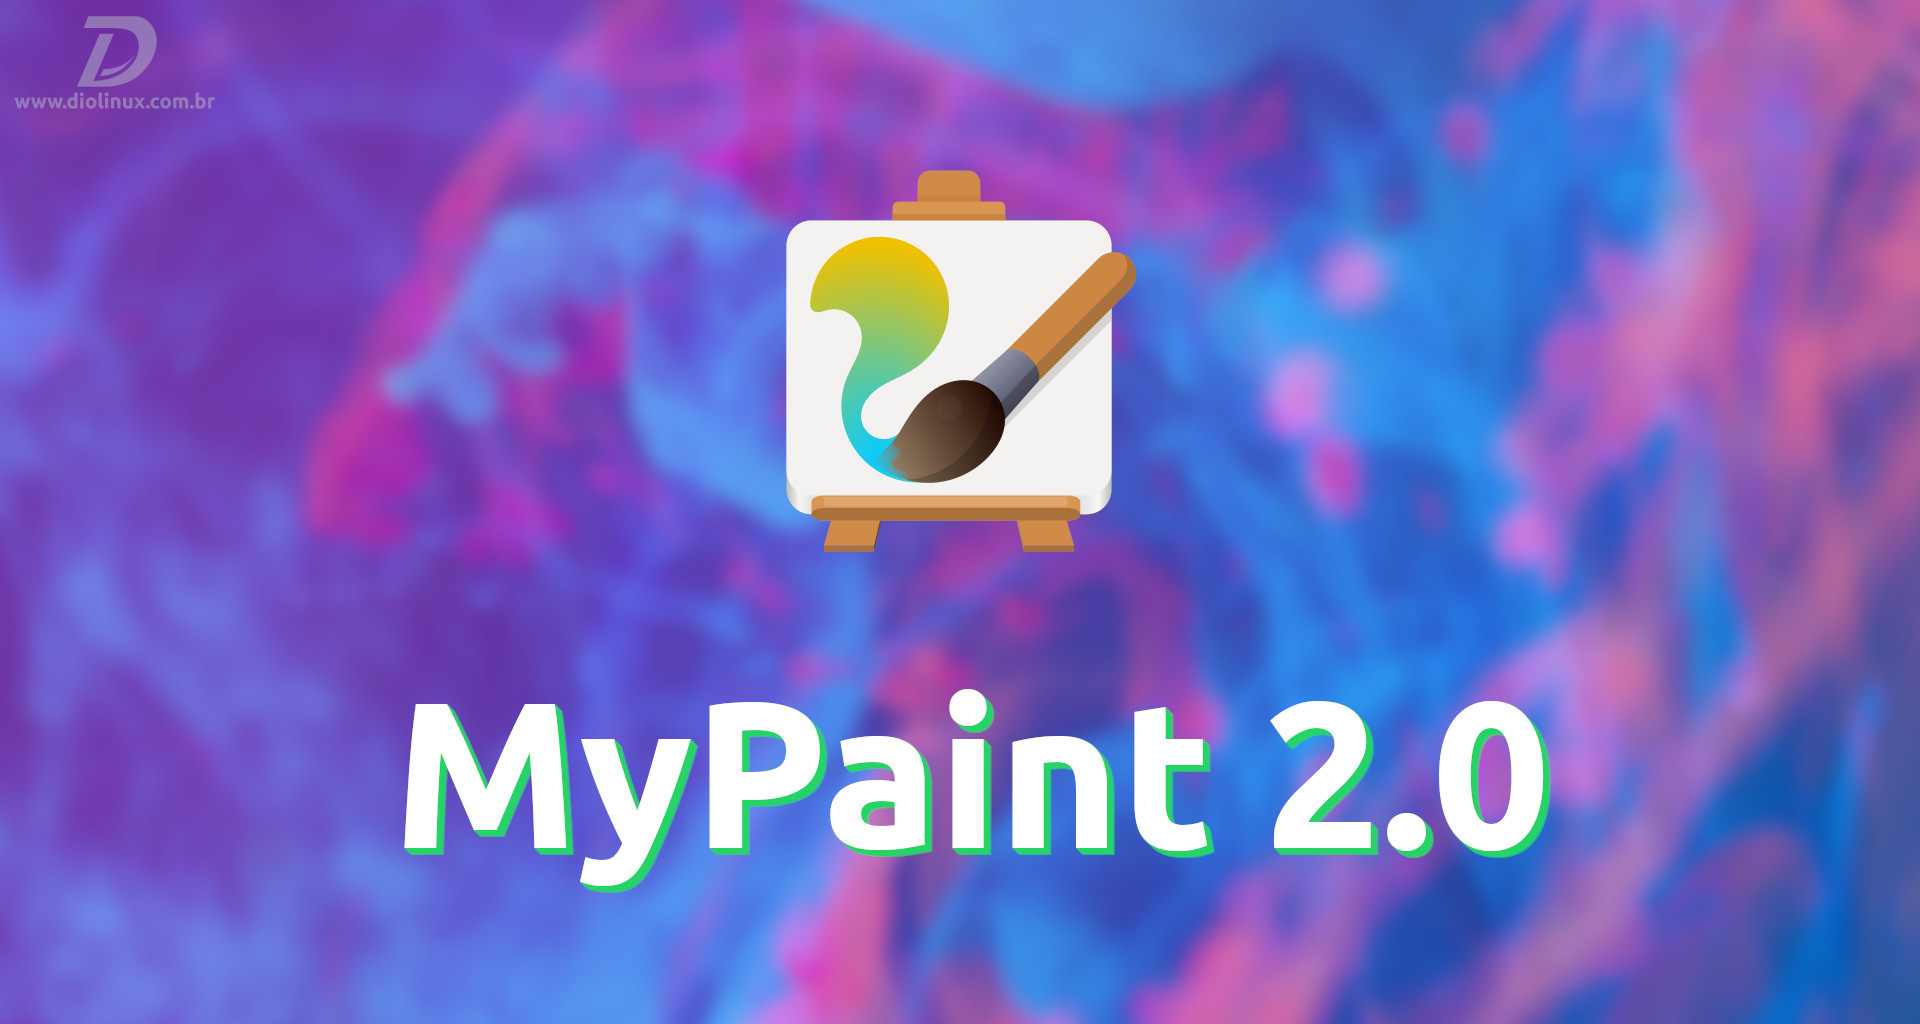 MyPaint2.0 lançado